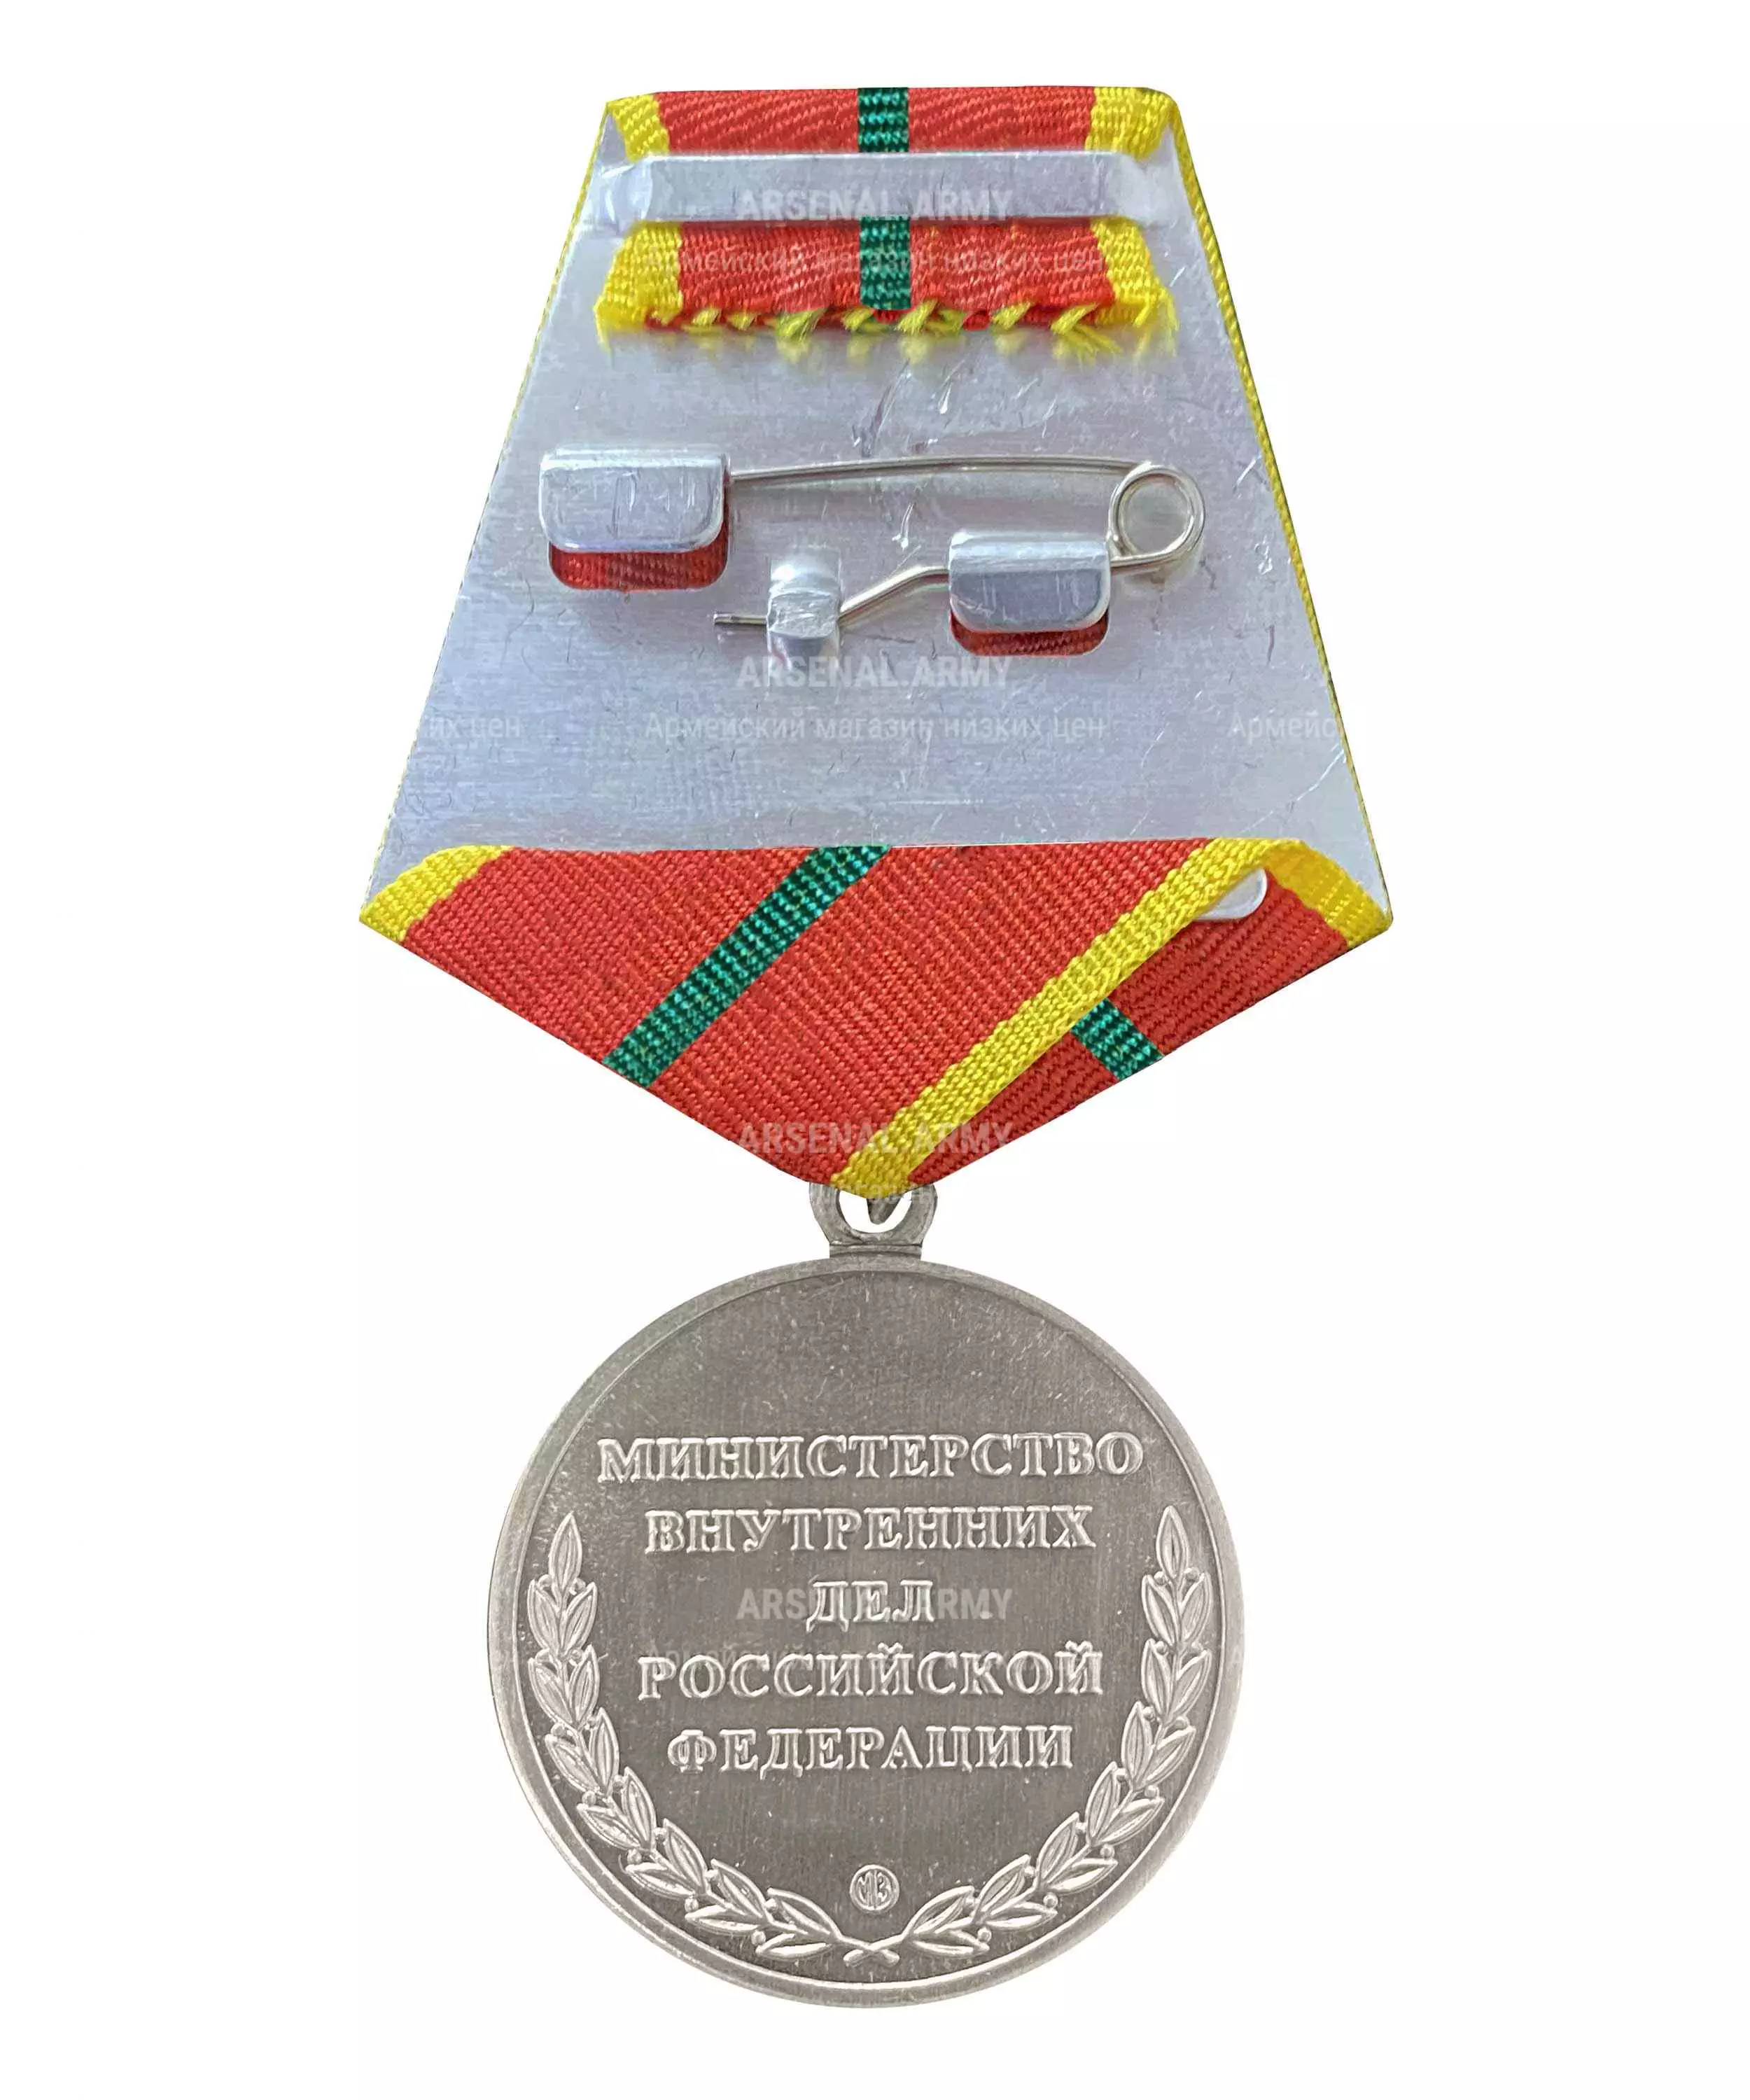 Медаль МВД "За отличие в службе" 1 степени — 2